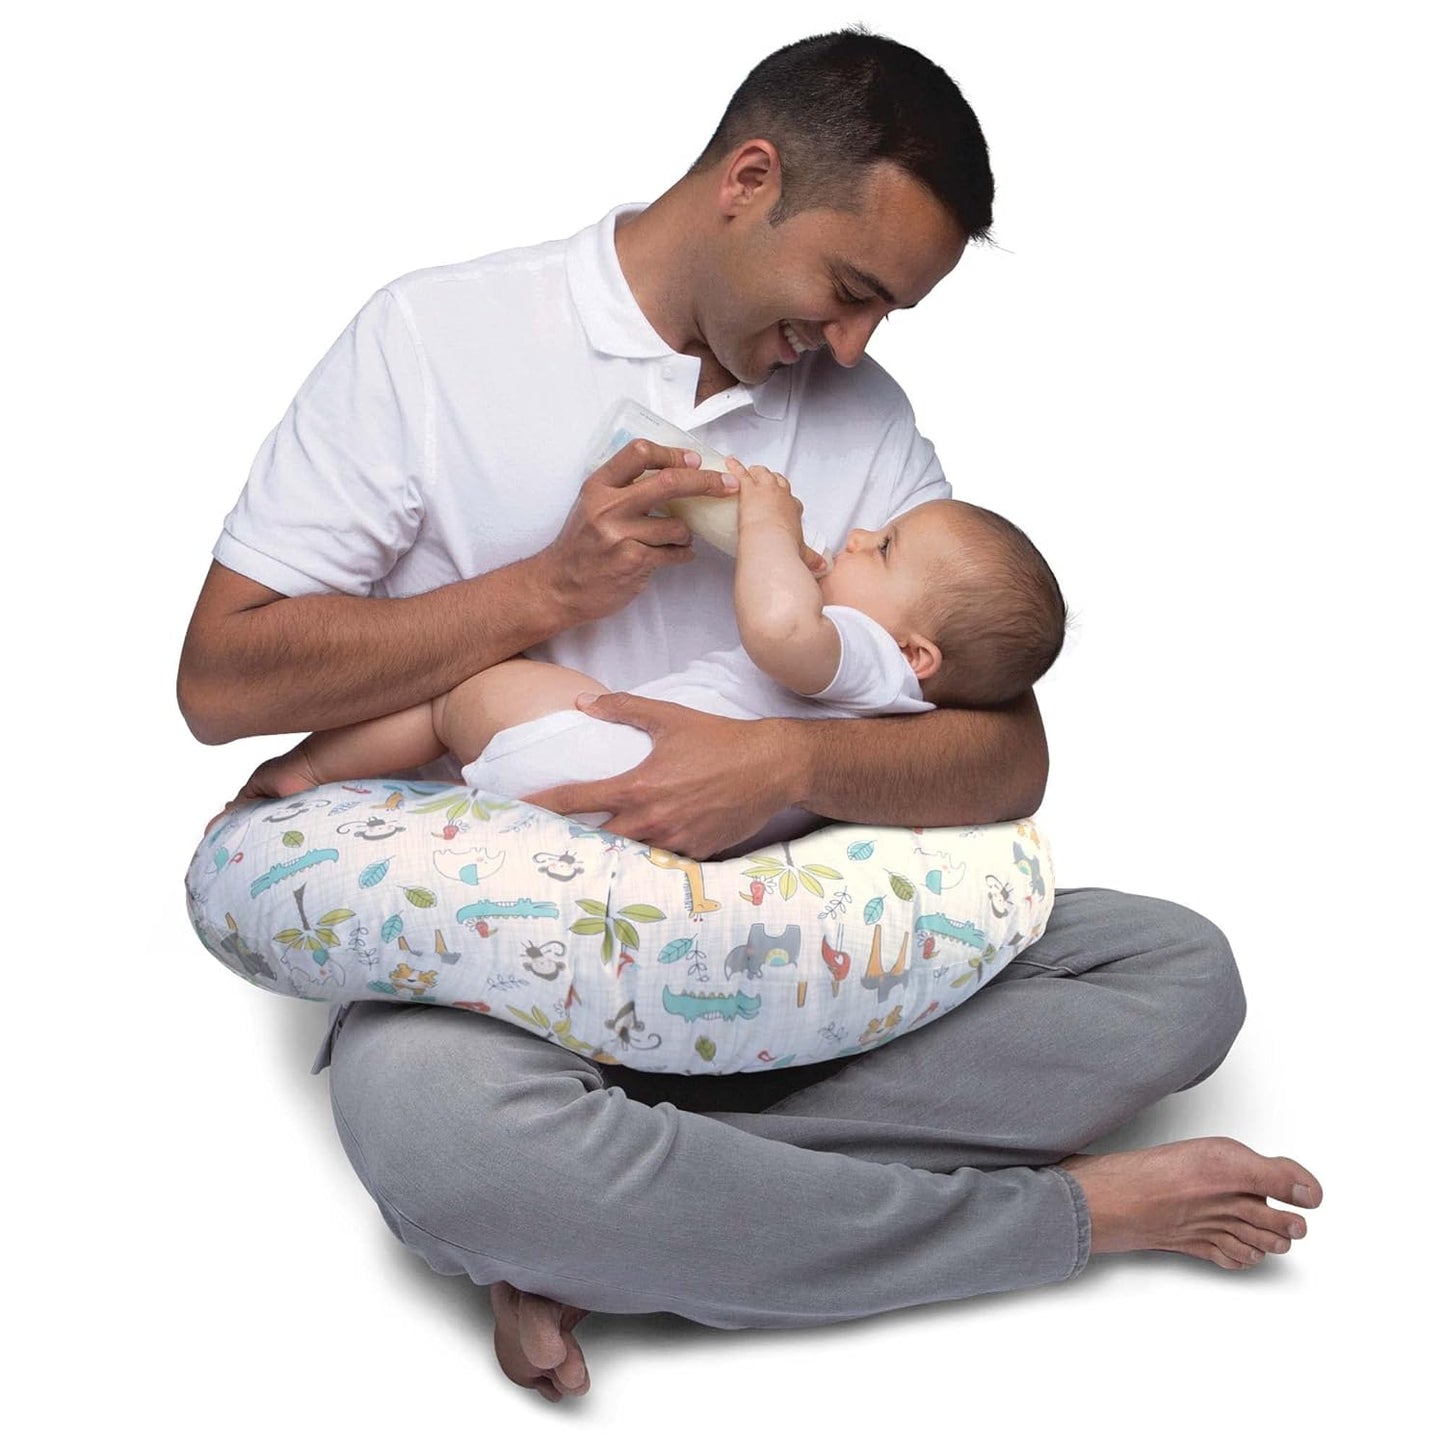 Boppy Original Blue Nursing Pillow - Ergonomic Hypoallergenic Support for Bottle & Breastfeeding